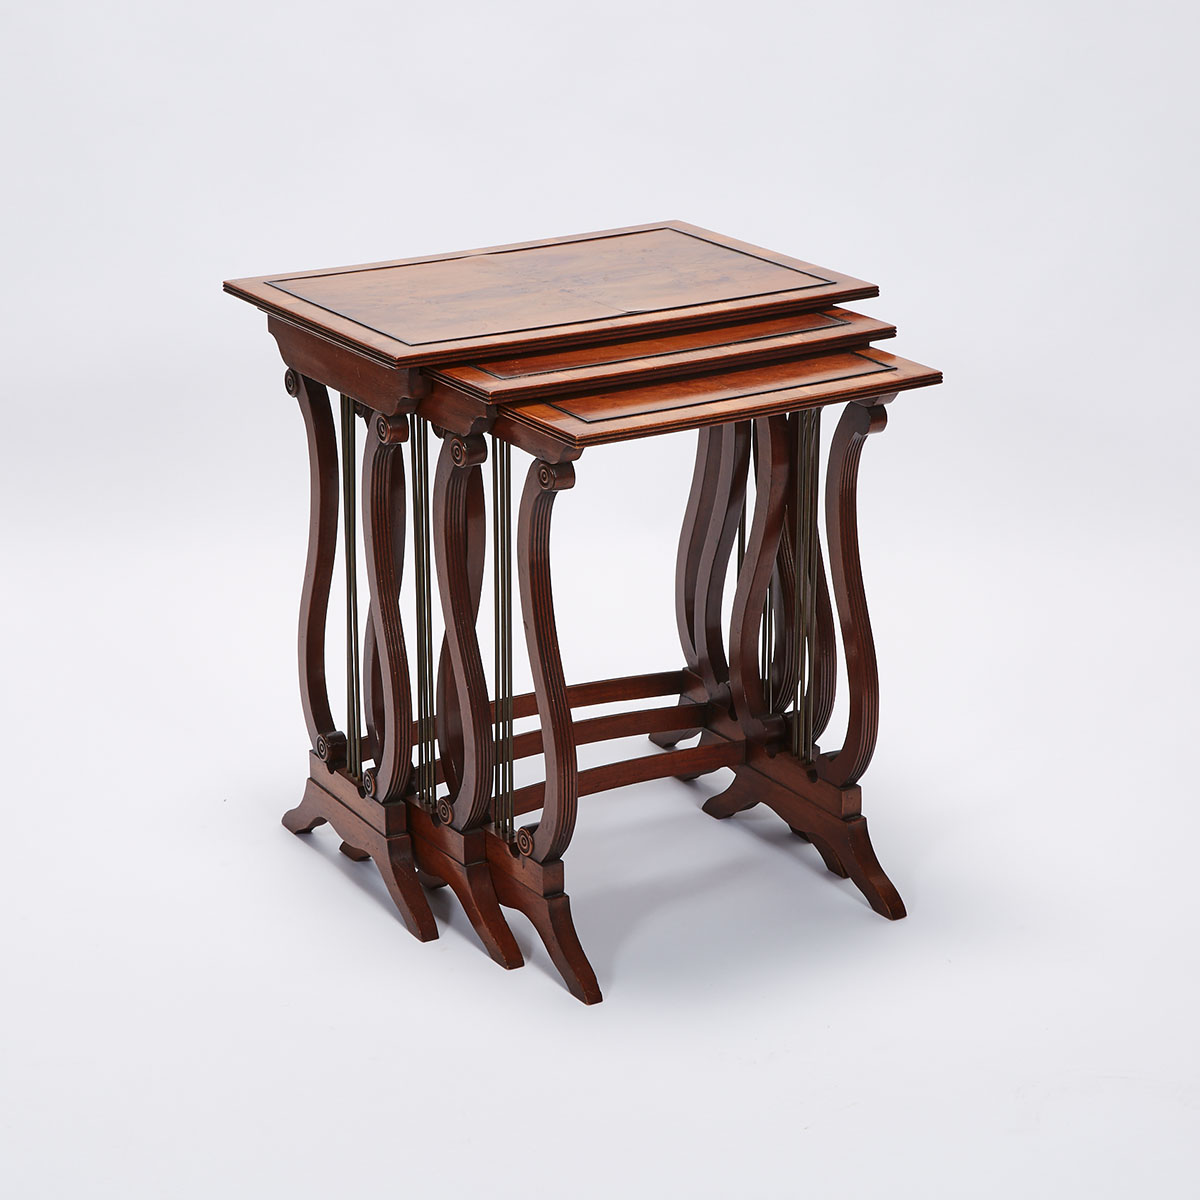 Set of Three Regency Style Mahogany Nesting Tables, early 20th century